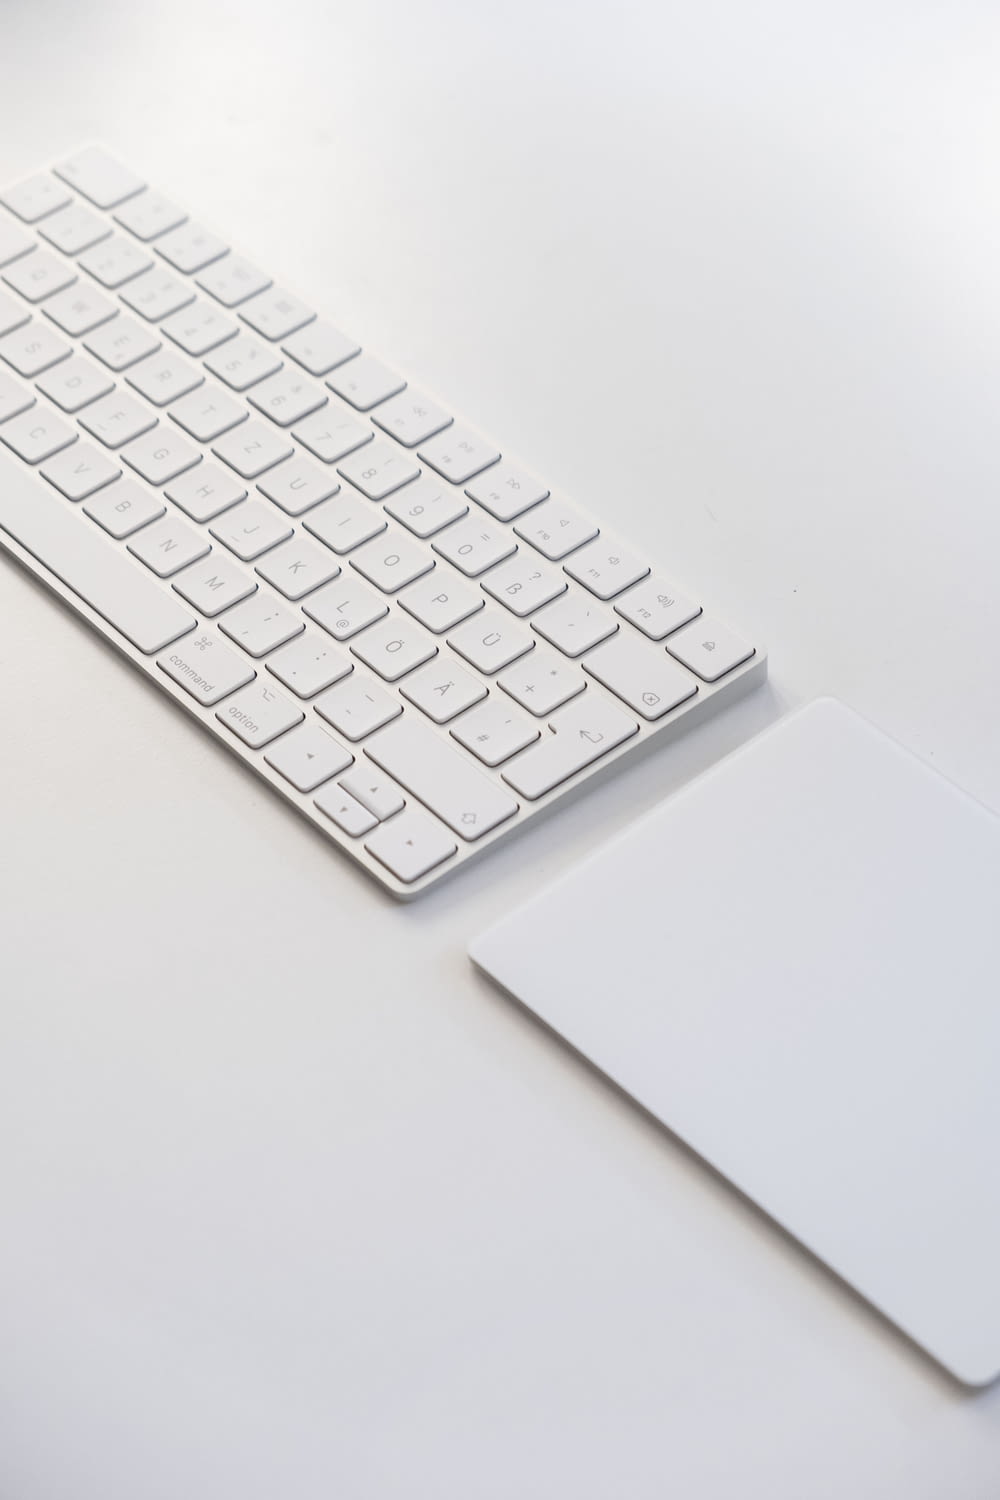 clavier Apple blanc sur table blanche